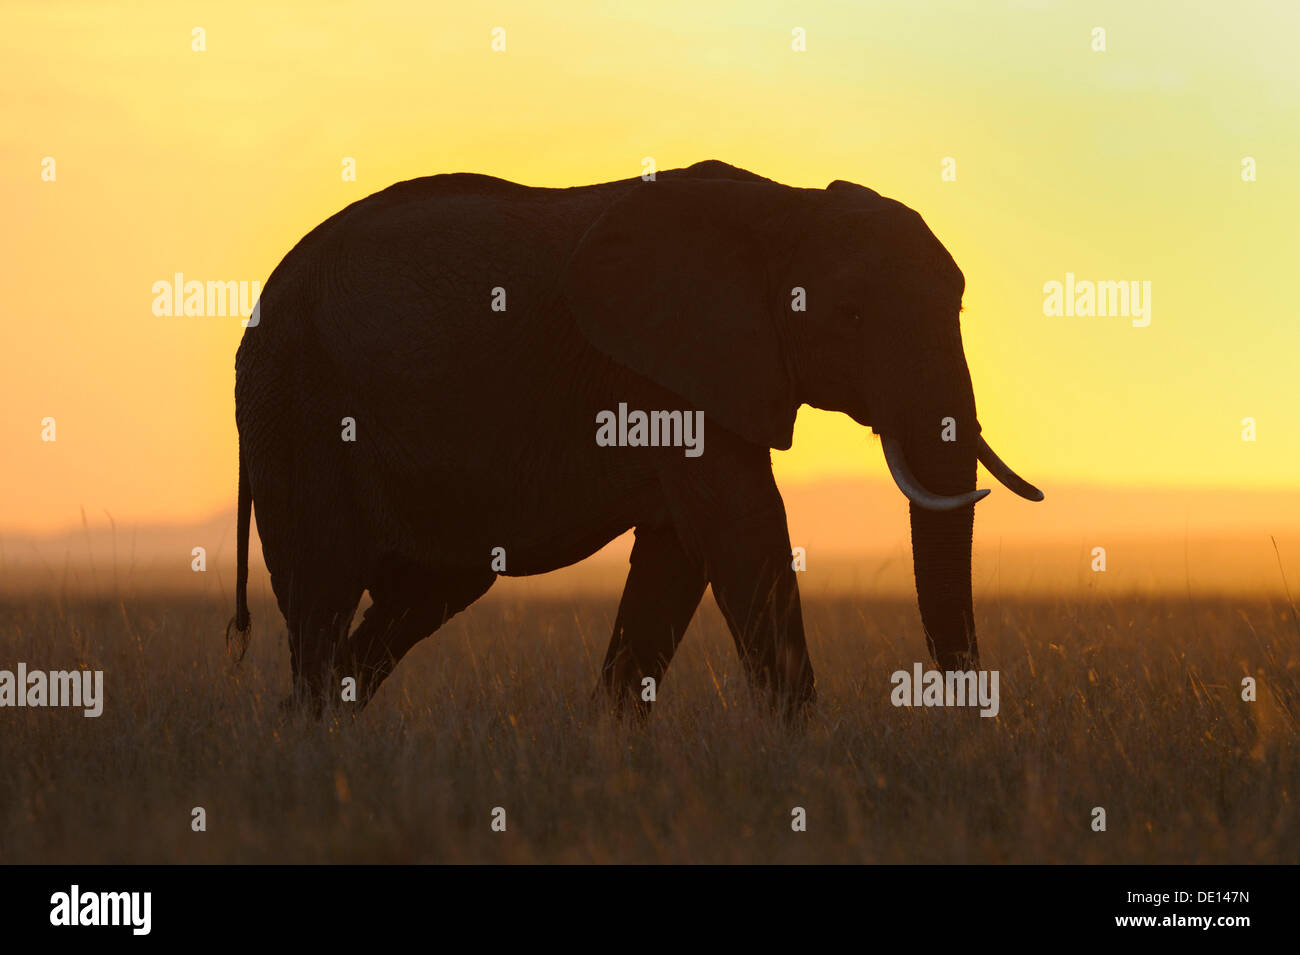 Afrikanischer Elefant (Loxodonta Africana) bei Sonnenuntergang, Masai Mara National Reserve, Kenia, Ostafrika, Afrika Stockfoto